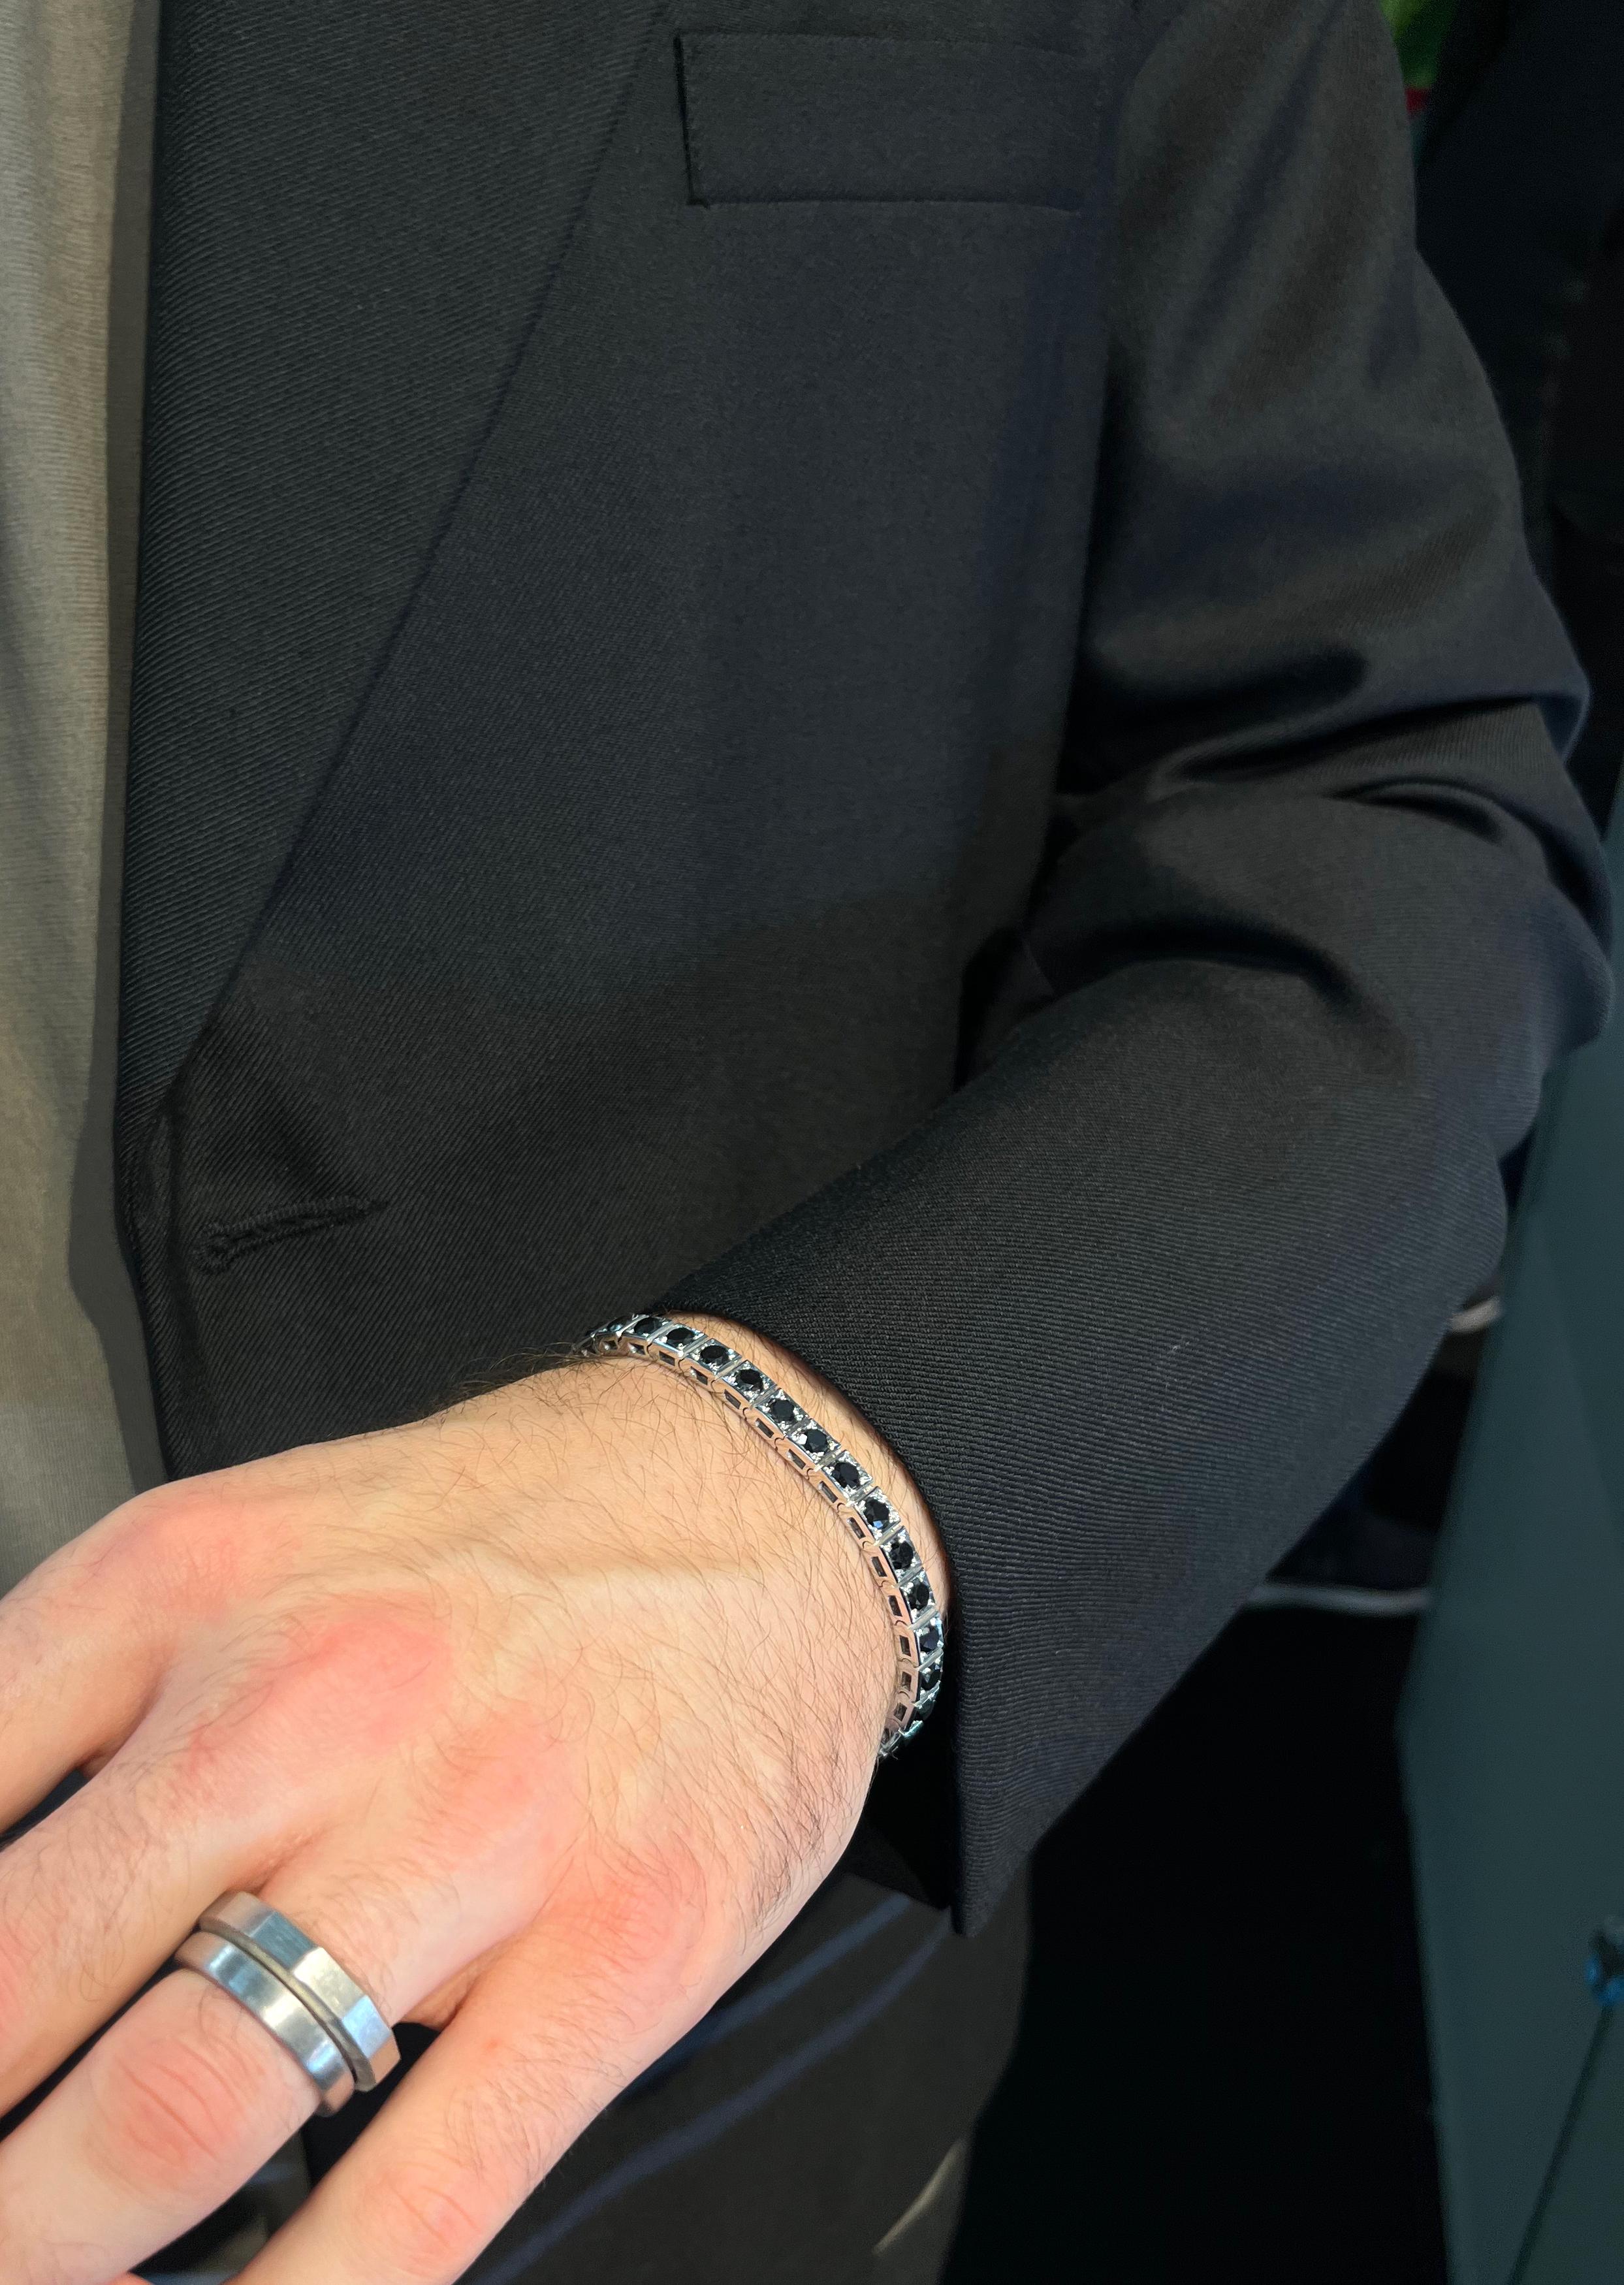 Ce bracelet pour homme brillant et épuré en or blanc 18k incrusté de diamants noirs est une pièce sophistiquée qui attire l'attention et éblouira de jour comme de nuit.

Poids : 14,50 carats